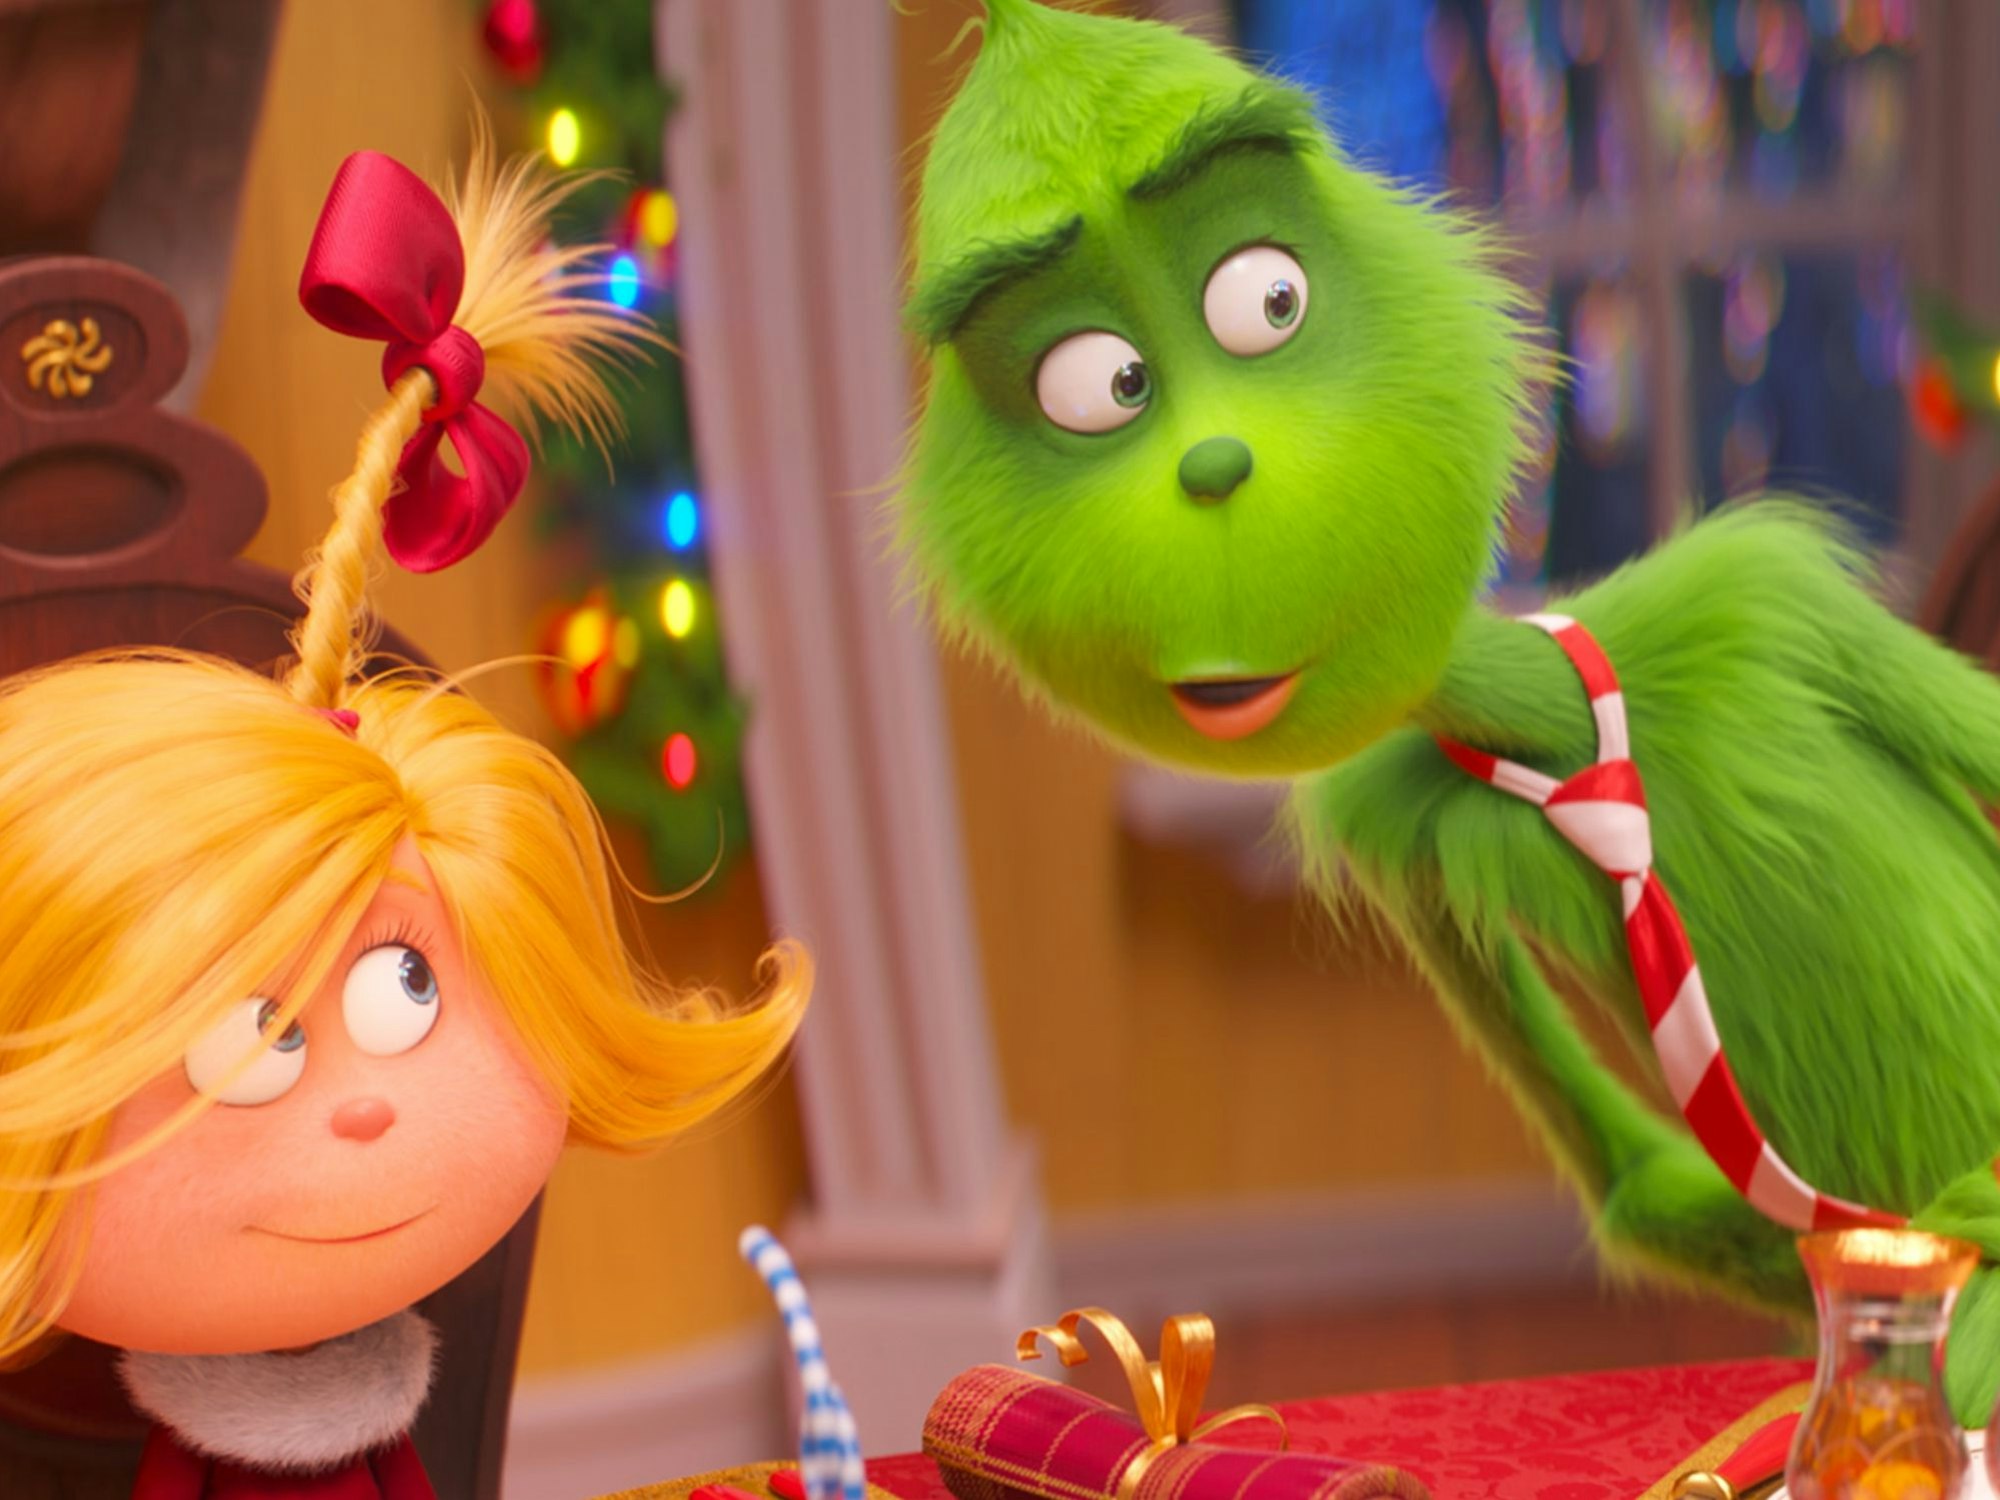 Der Grinch hasst Weihnachten und möchte das Fest für alle Menschen verderben.